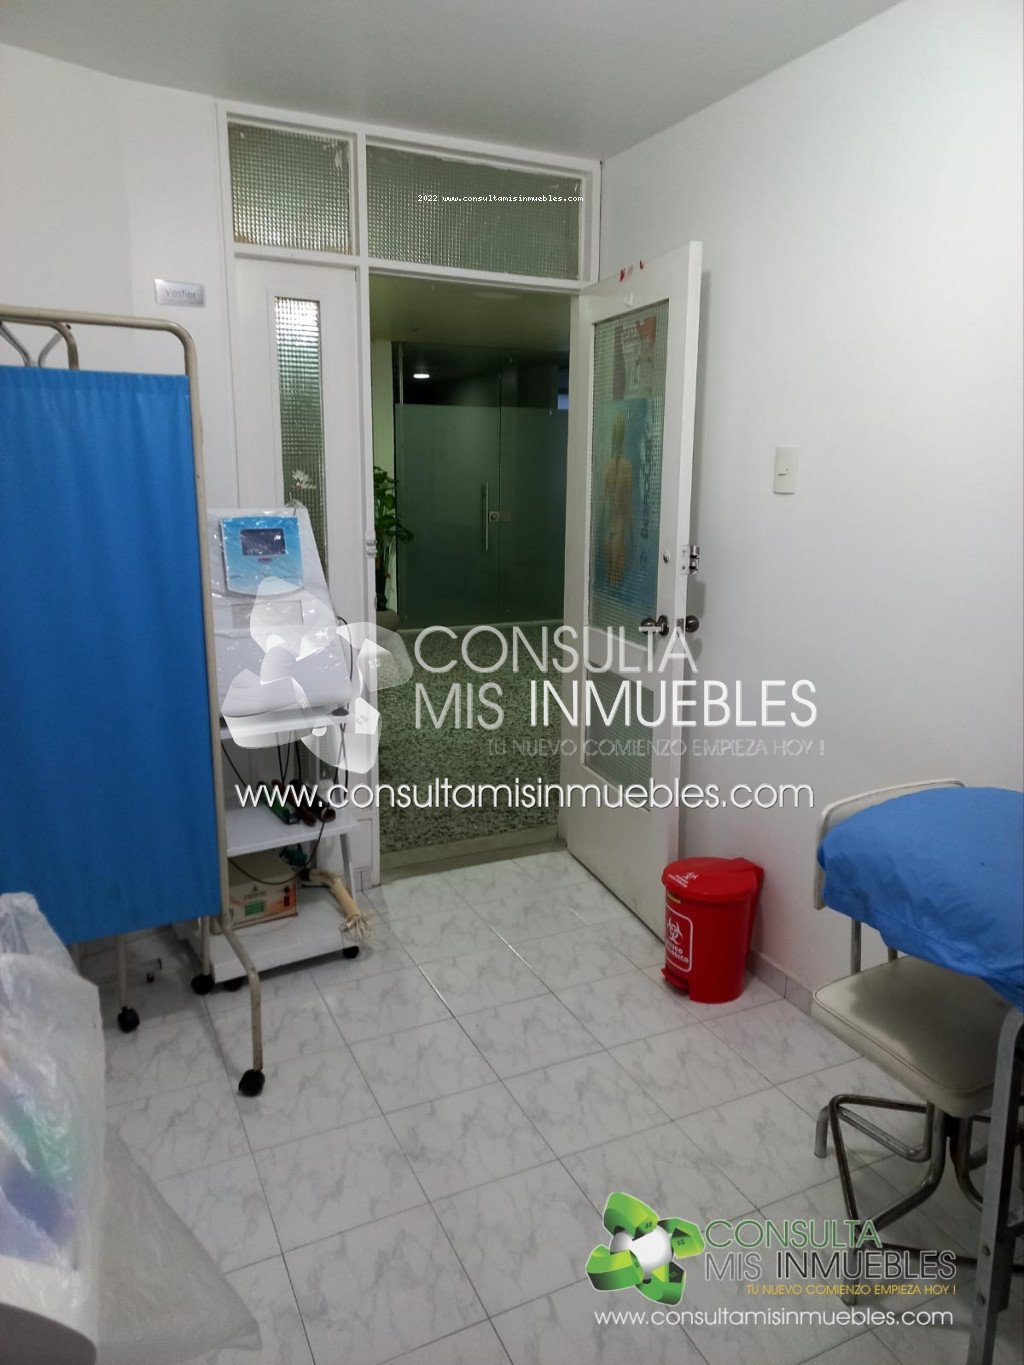 Vendo Consultorio en el Barrio Centro en Ibagué, Tolima de Colombia | Consulta Mis Inmuebles S.A.S. | Tu nuevo comienzo empieza hoy!